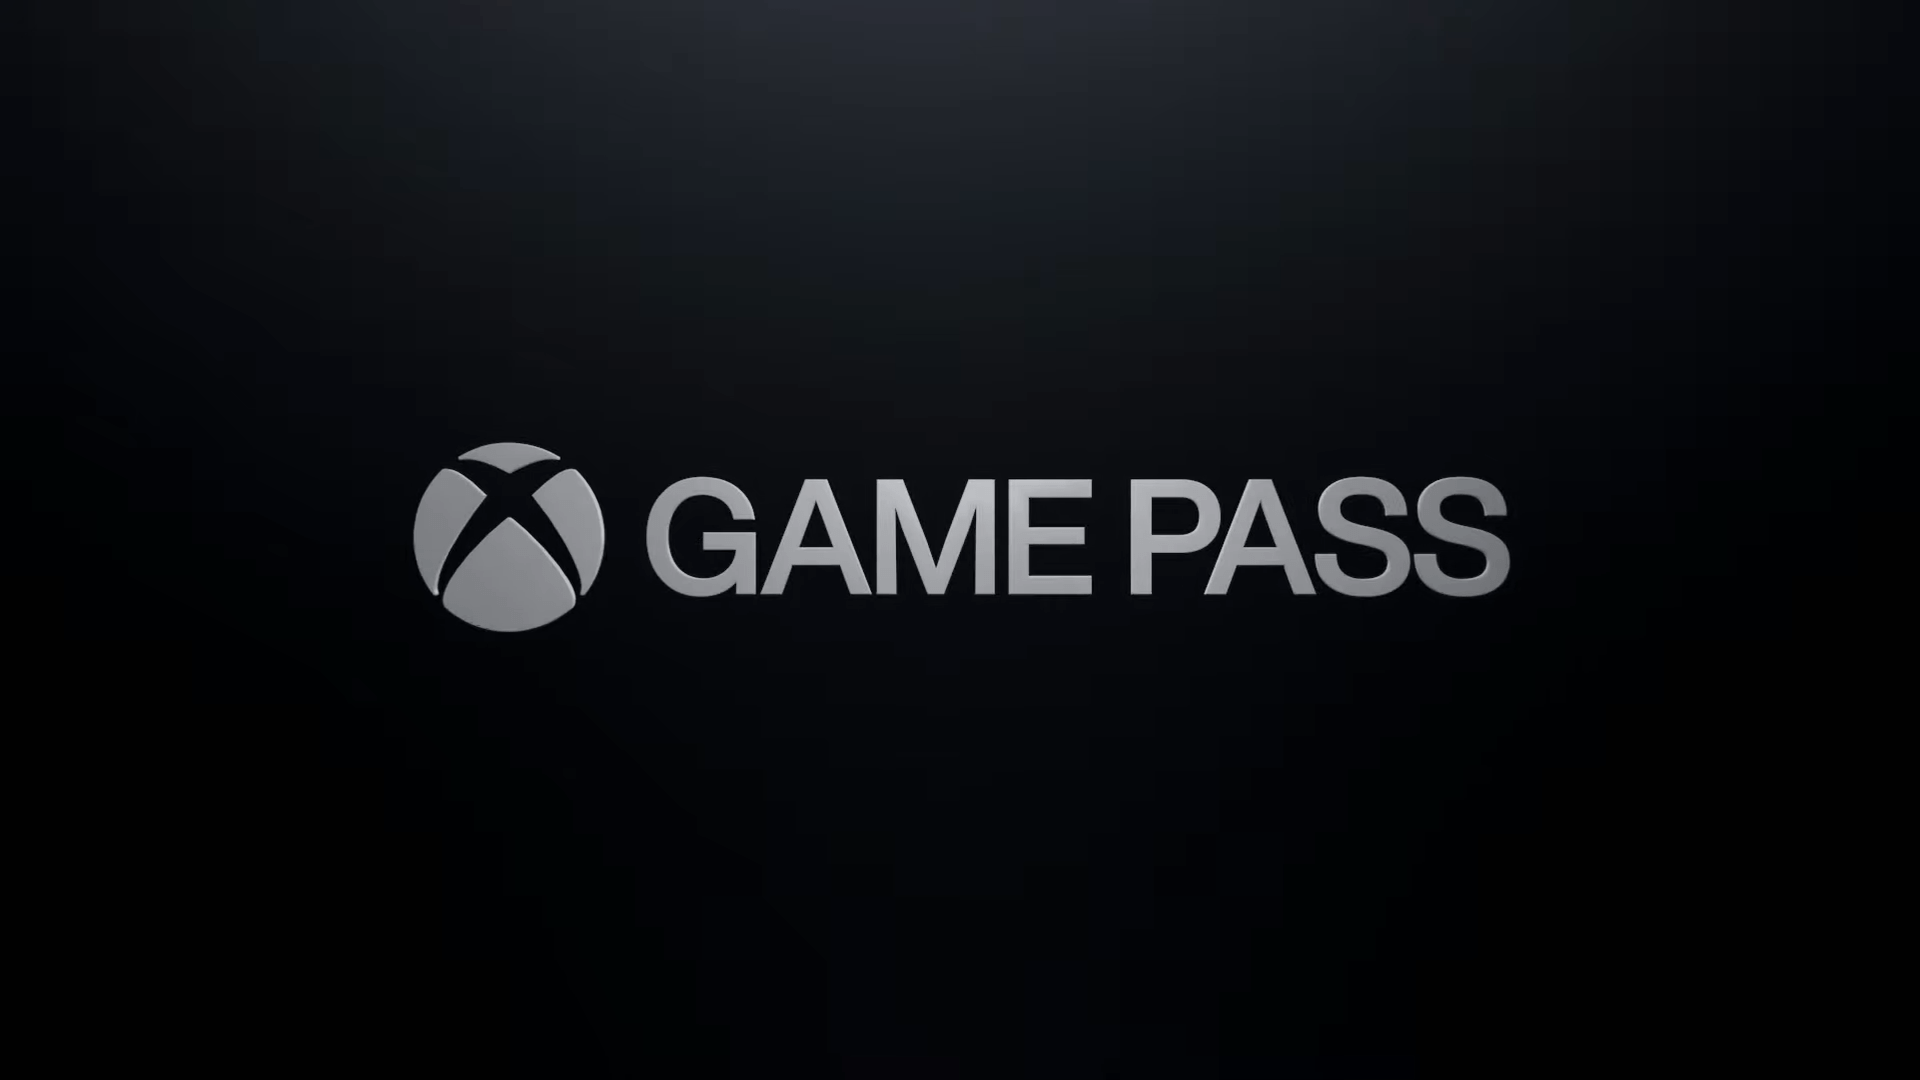 En attendant le nouveau PS+, le Xbox Game Pass domine largement le marché